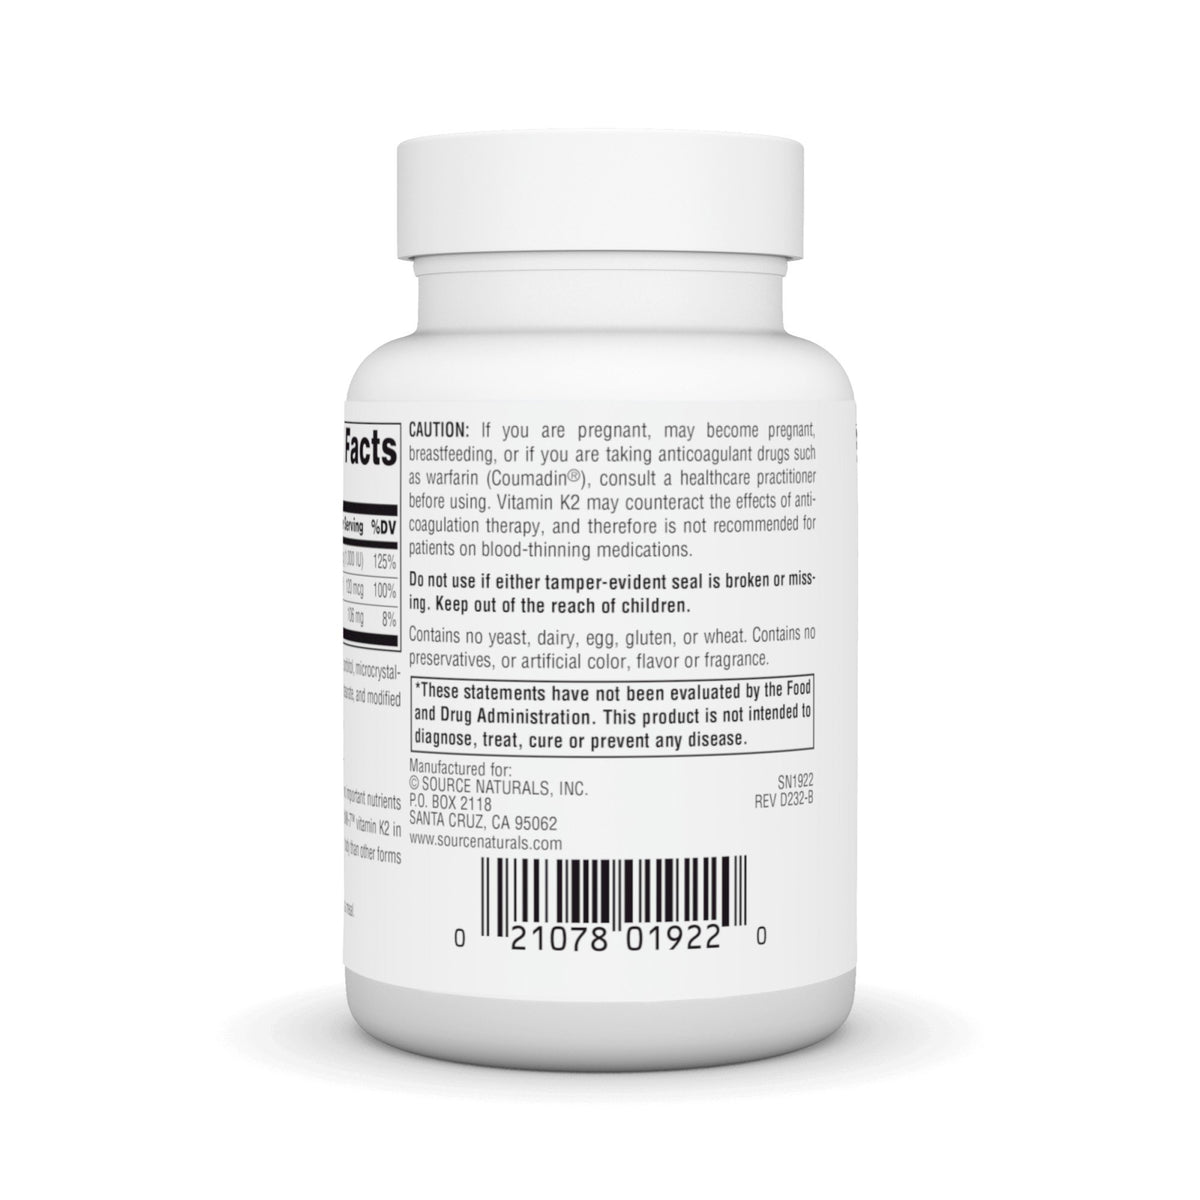 Source Naturals, Inc. Vitamin K-2 60 Tablet